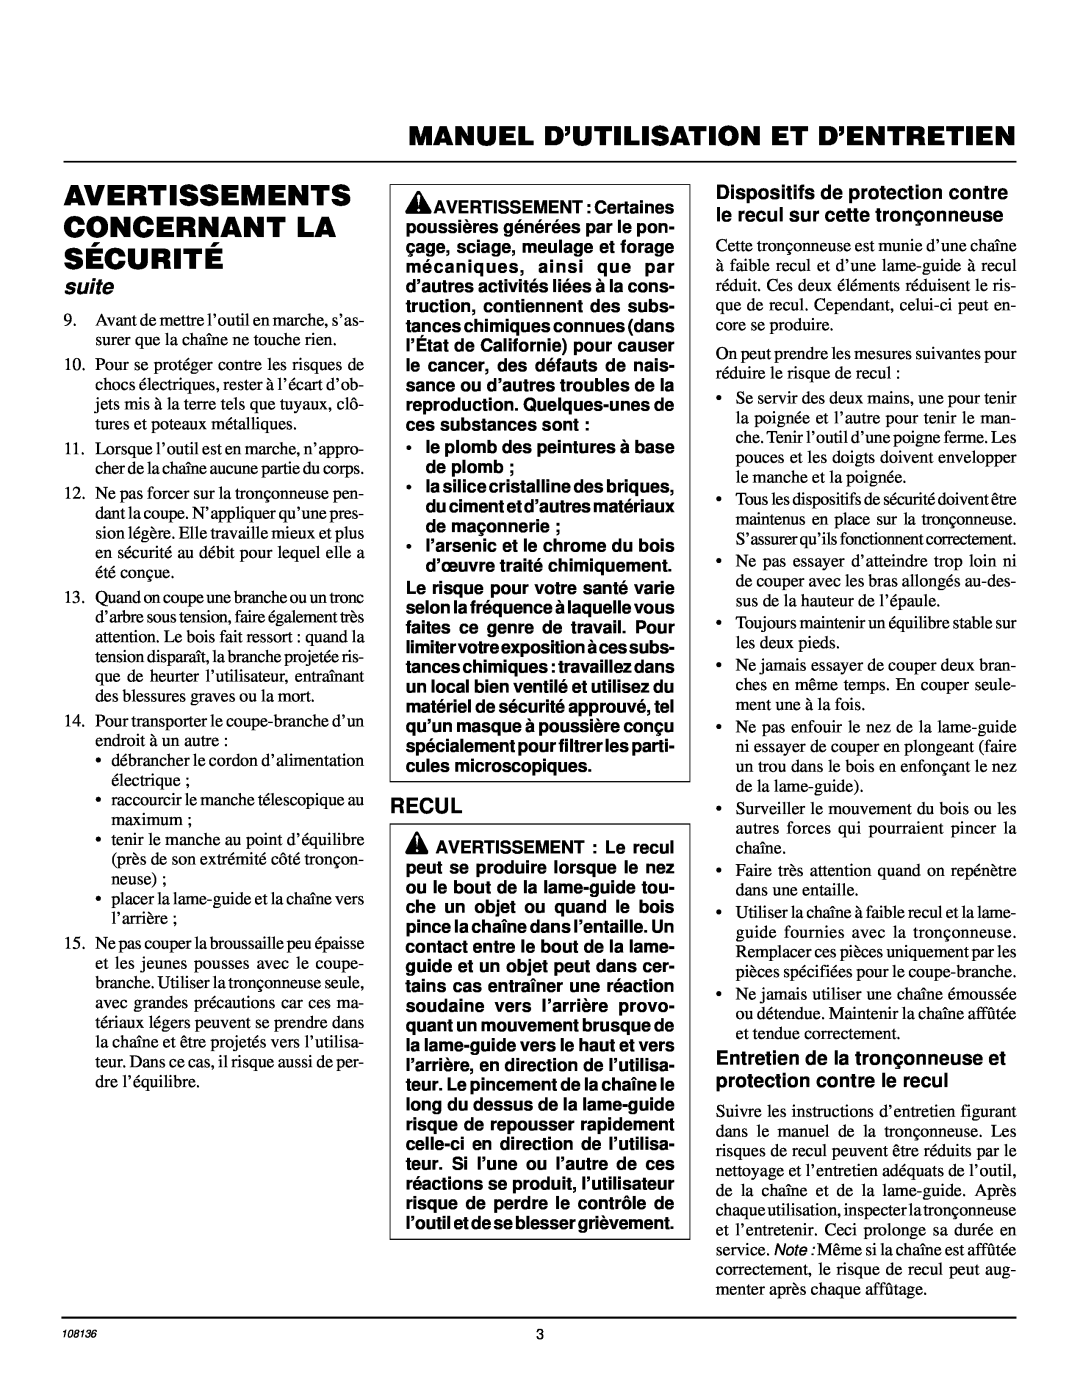 Remington RPS96 owner manual Avertissements Concernant La Sécurité, Manuel D’Utilisation Et D’Entretien, suite, Recul 